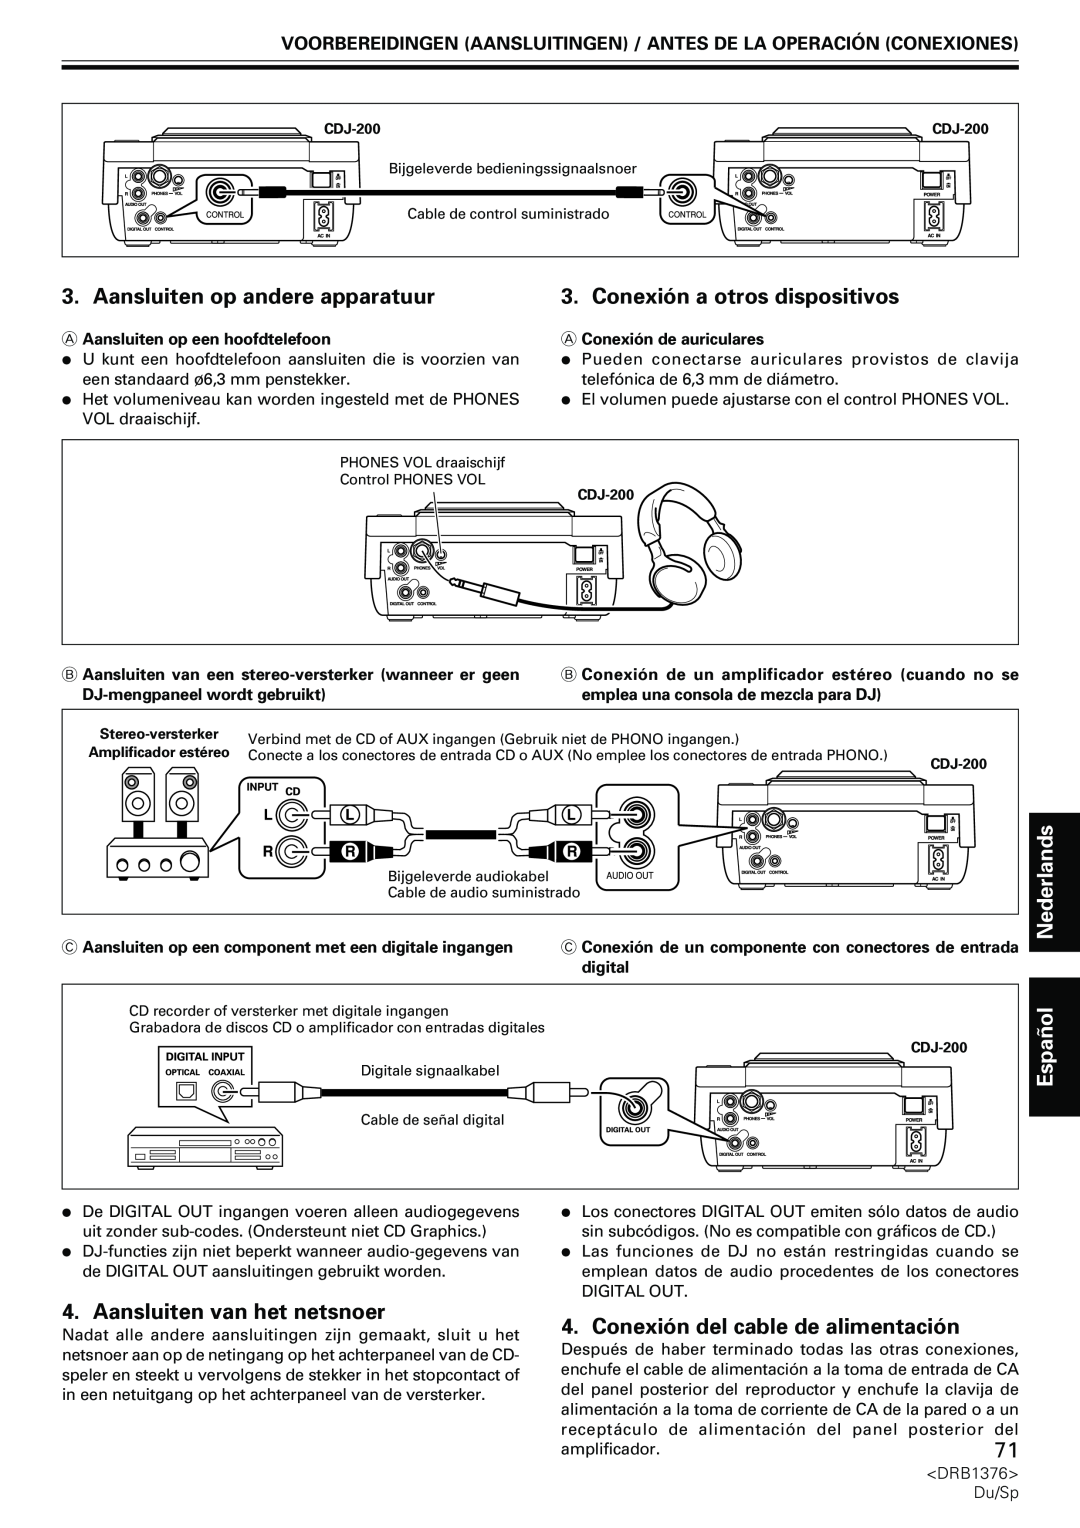 Pioneer CDJ-200 manual Aansluiten op andere apparatuur, Conexión a otros dispositivos, Español, Aansluiten van het netsnoer 